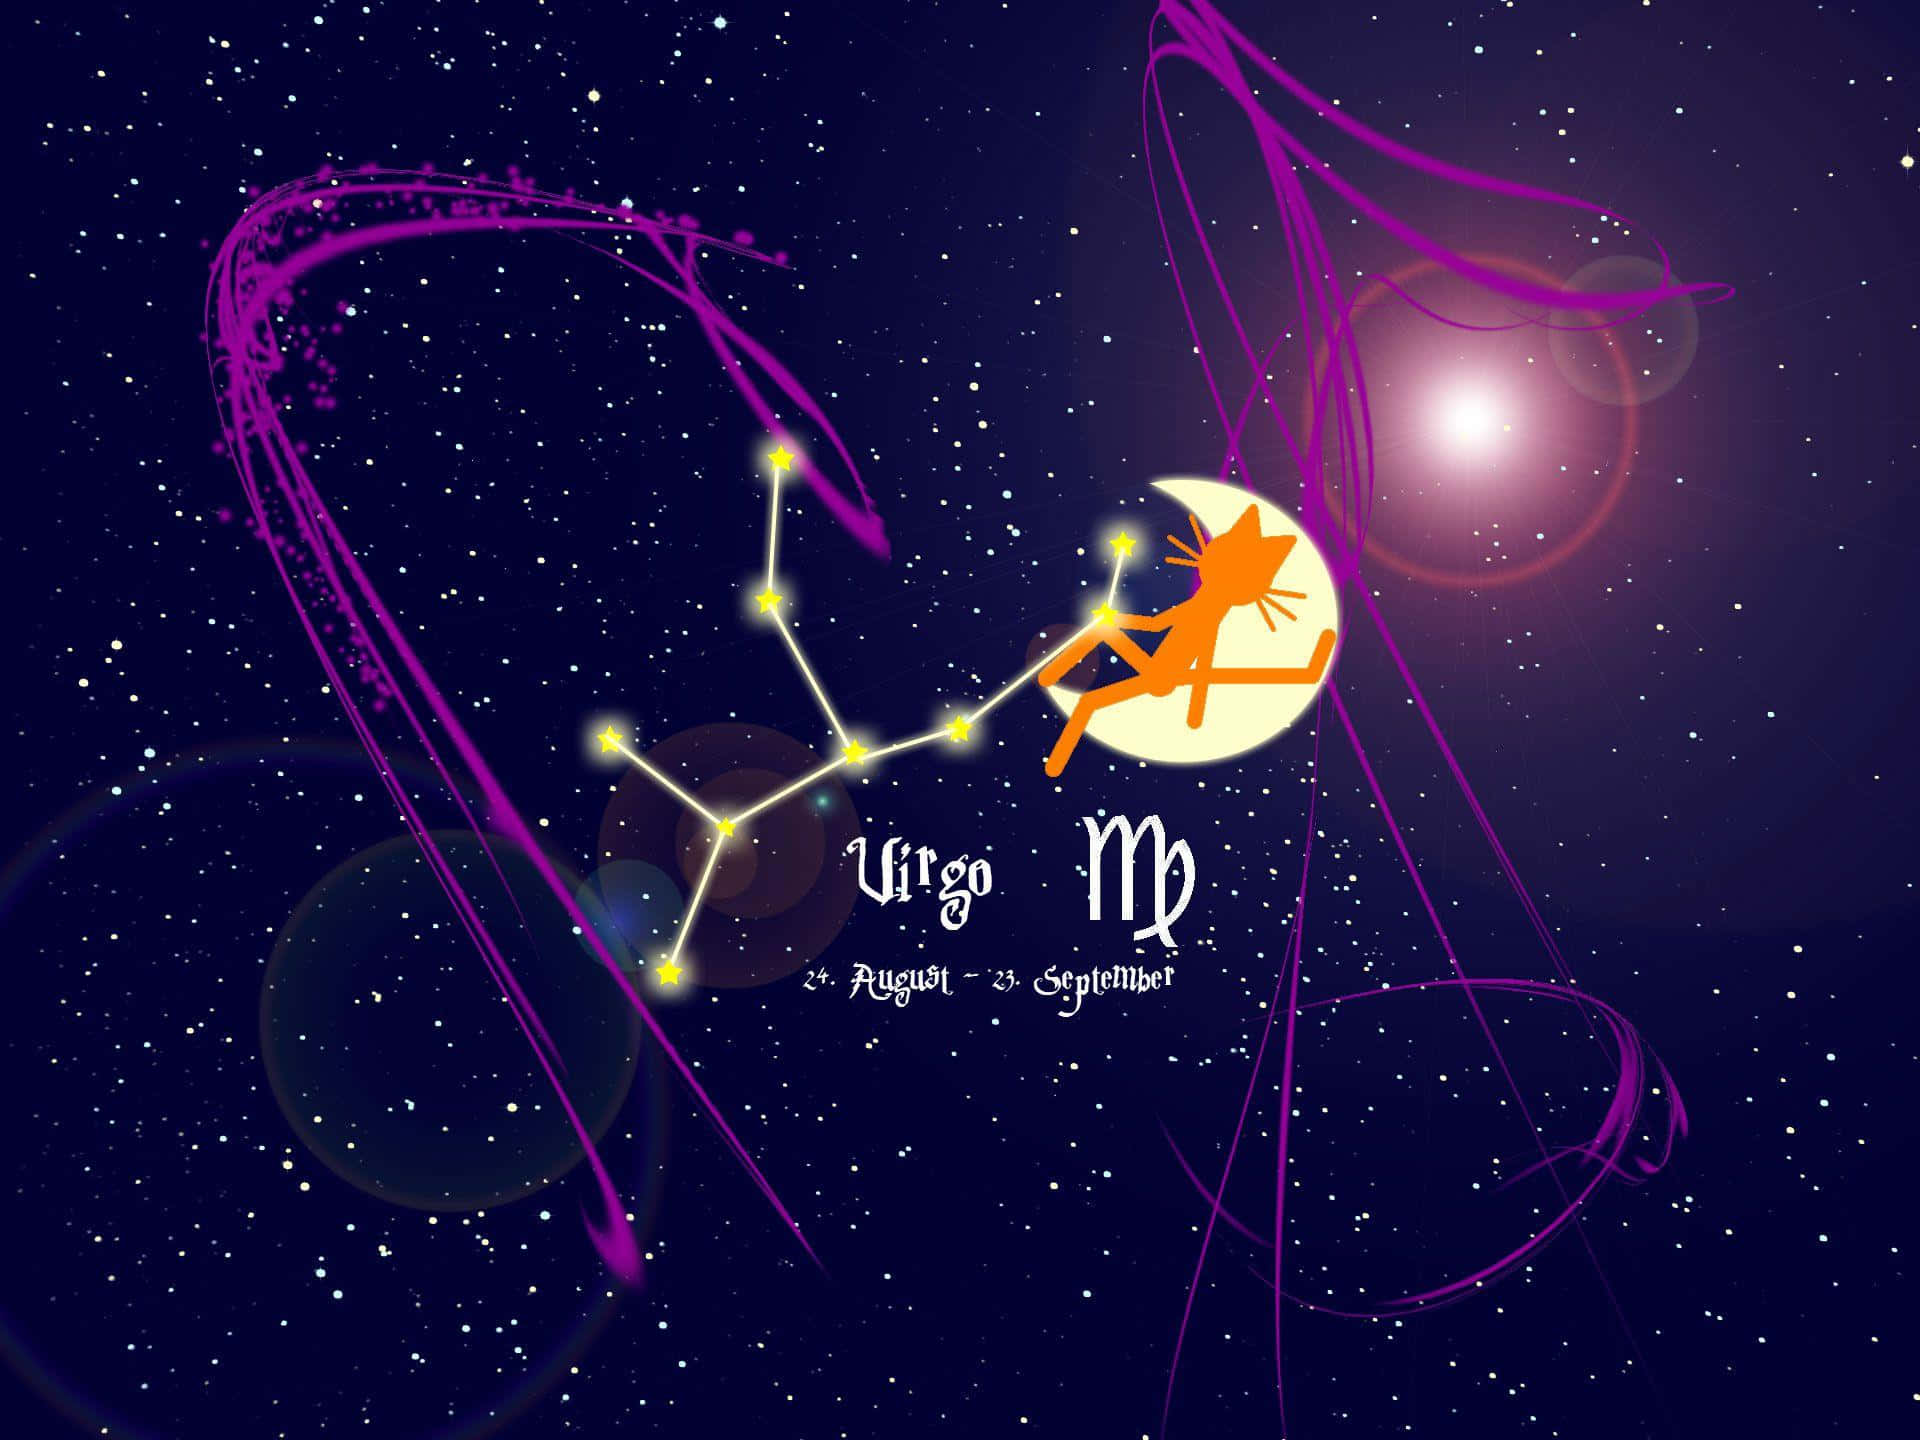 Enigmáticossignos Zodiacales En El Universo Cósmico